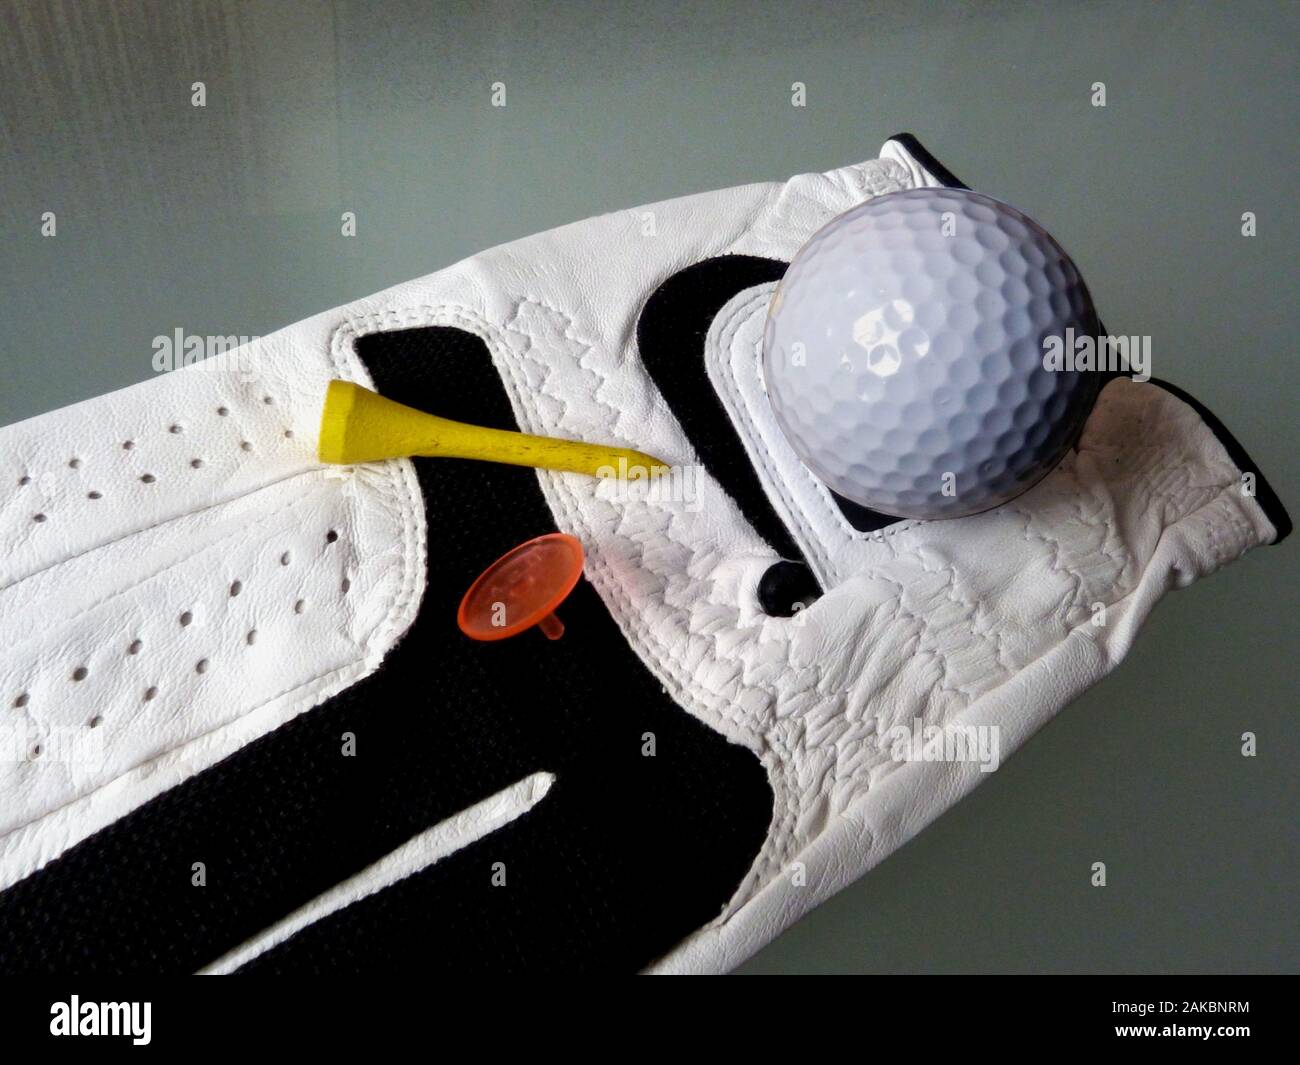 Marcador de pelota de golf fotografías e imágenes de alta resolución -  Página 2 - Alamy